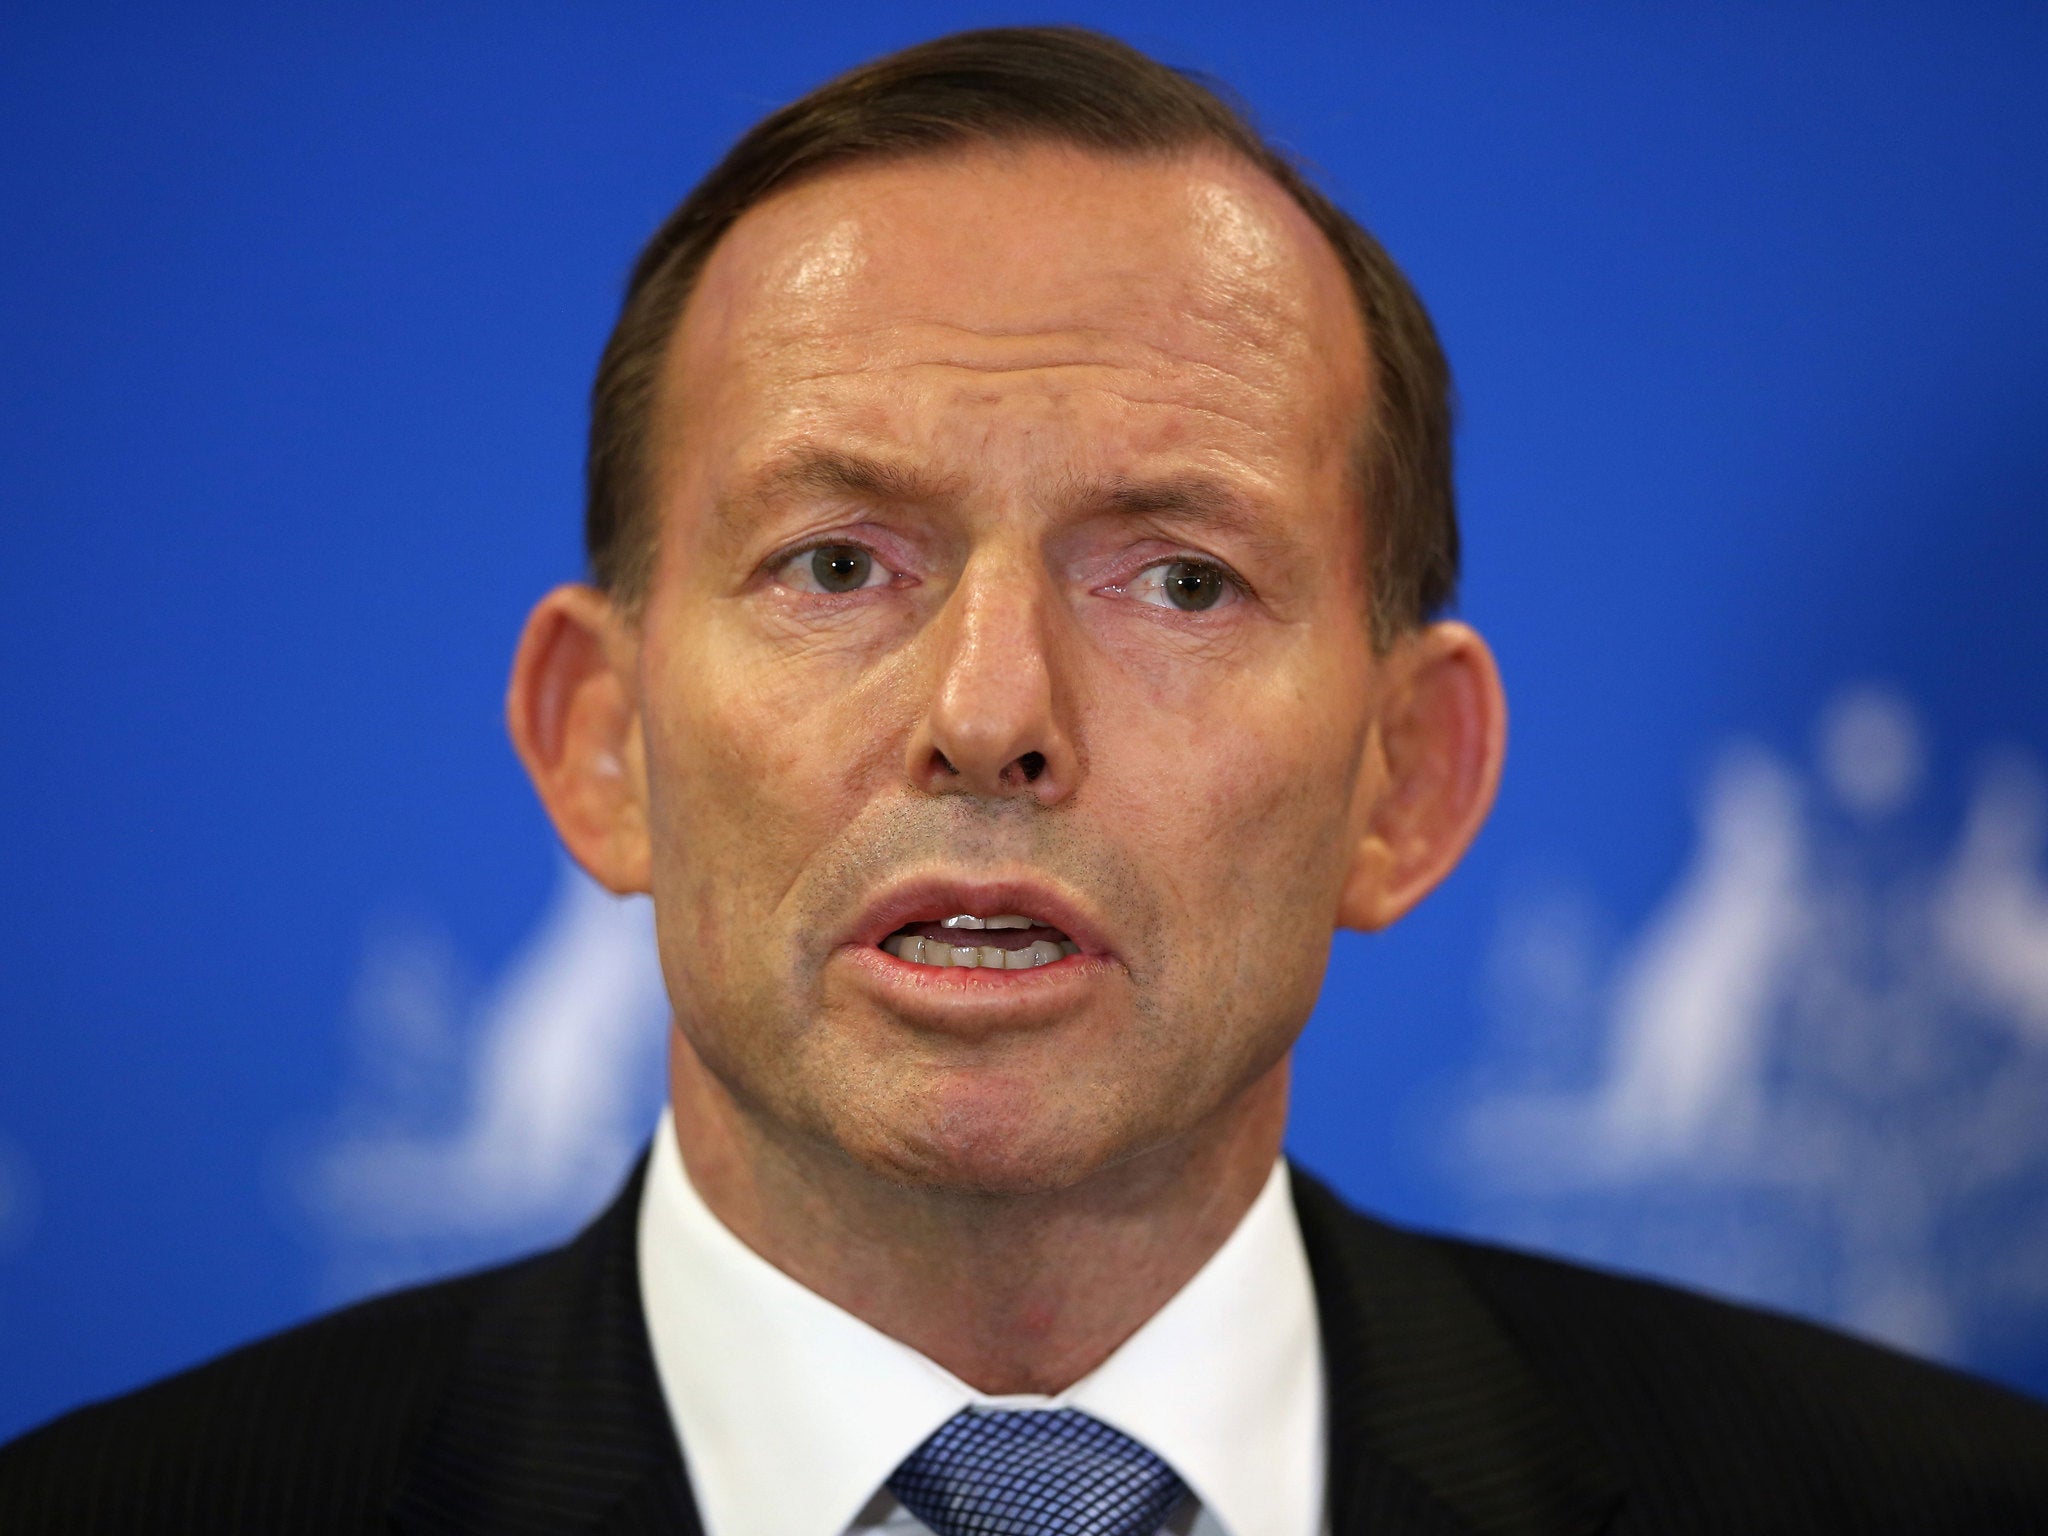 Tony Abbott became Prime Minister of Australia in 2013